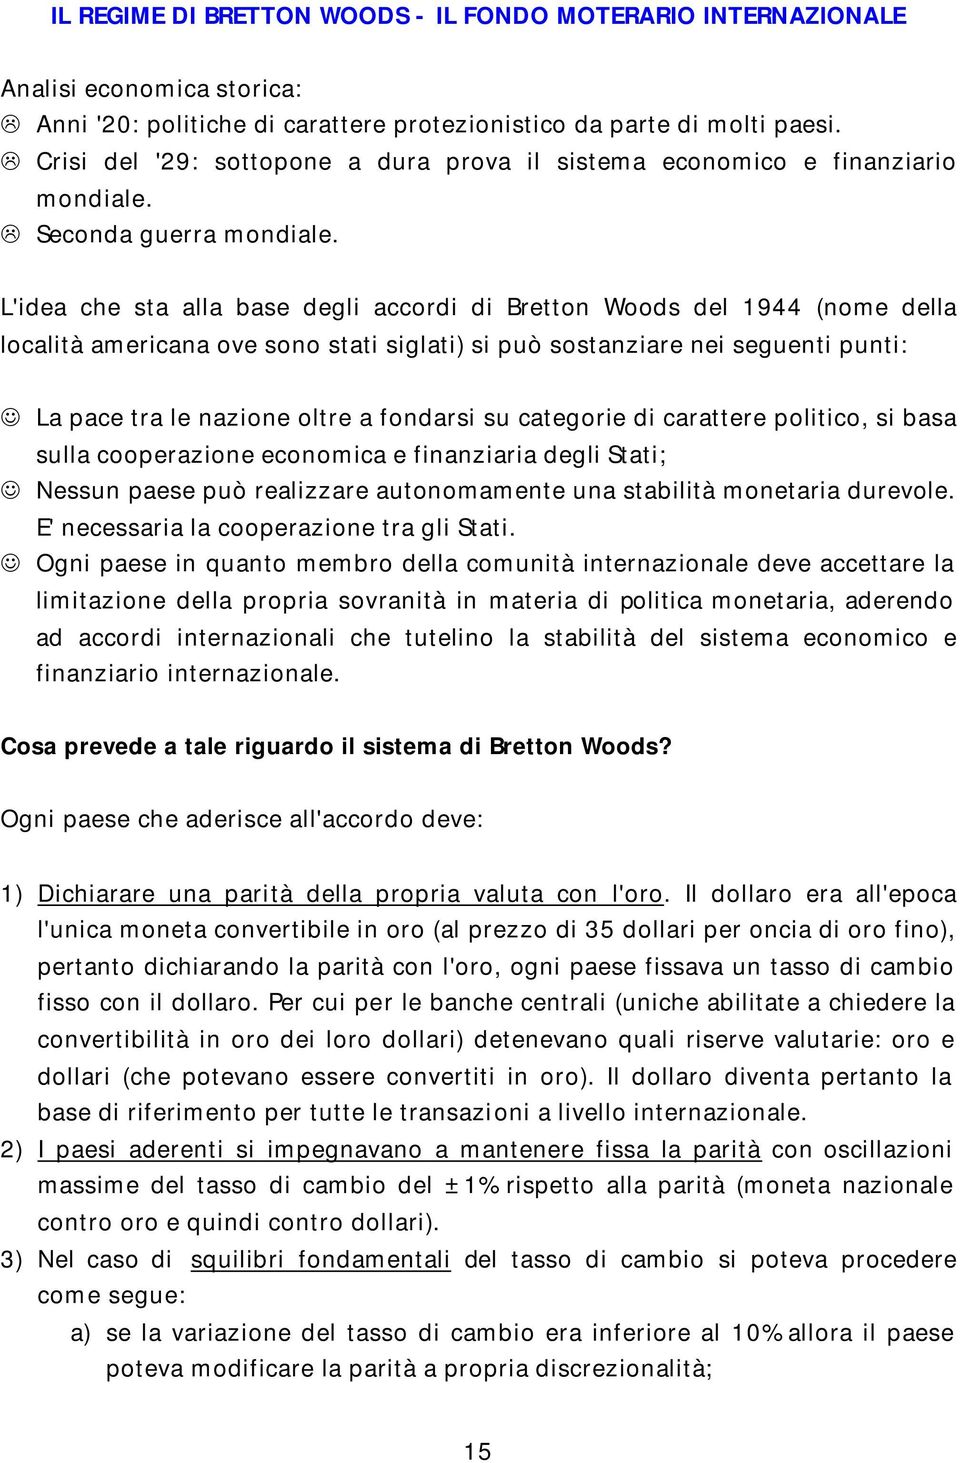 L'idea che sta alla base degli accordi di Bretton Woods del 1944 (nome della località americana ove sono stati siglati) si può sostanziare nei seguenti punti: La pace tra le nazione oltre a fondarsi